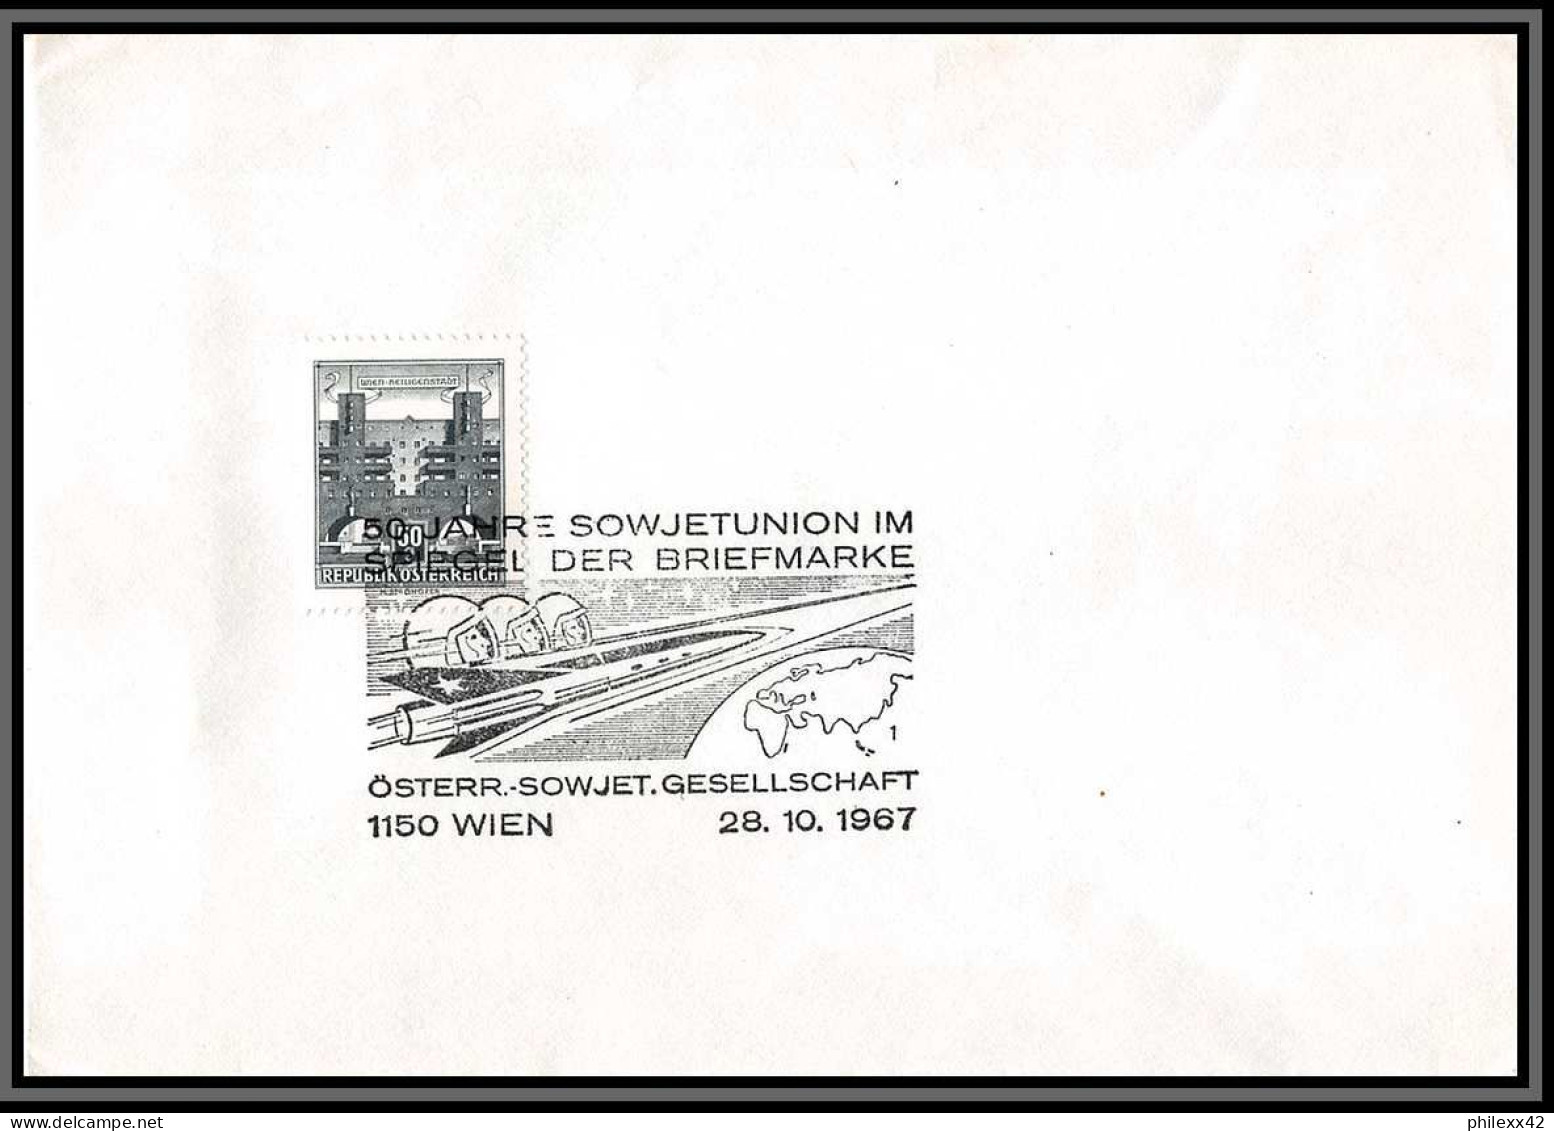 3696 Espace Space Raumfahrt Lettre Cover Briefe Cosmos Autriche (Austria) 28/10/1987 50 Jahre Sowjetunion - Europe